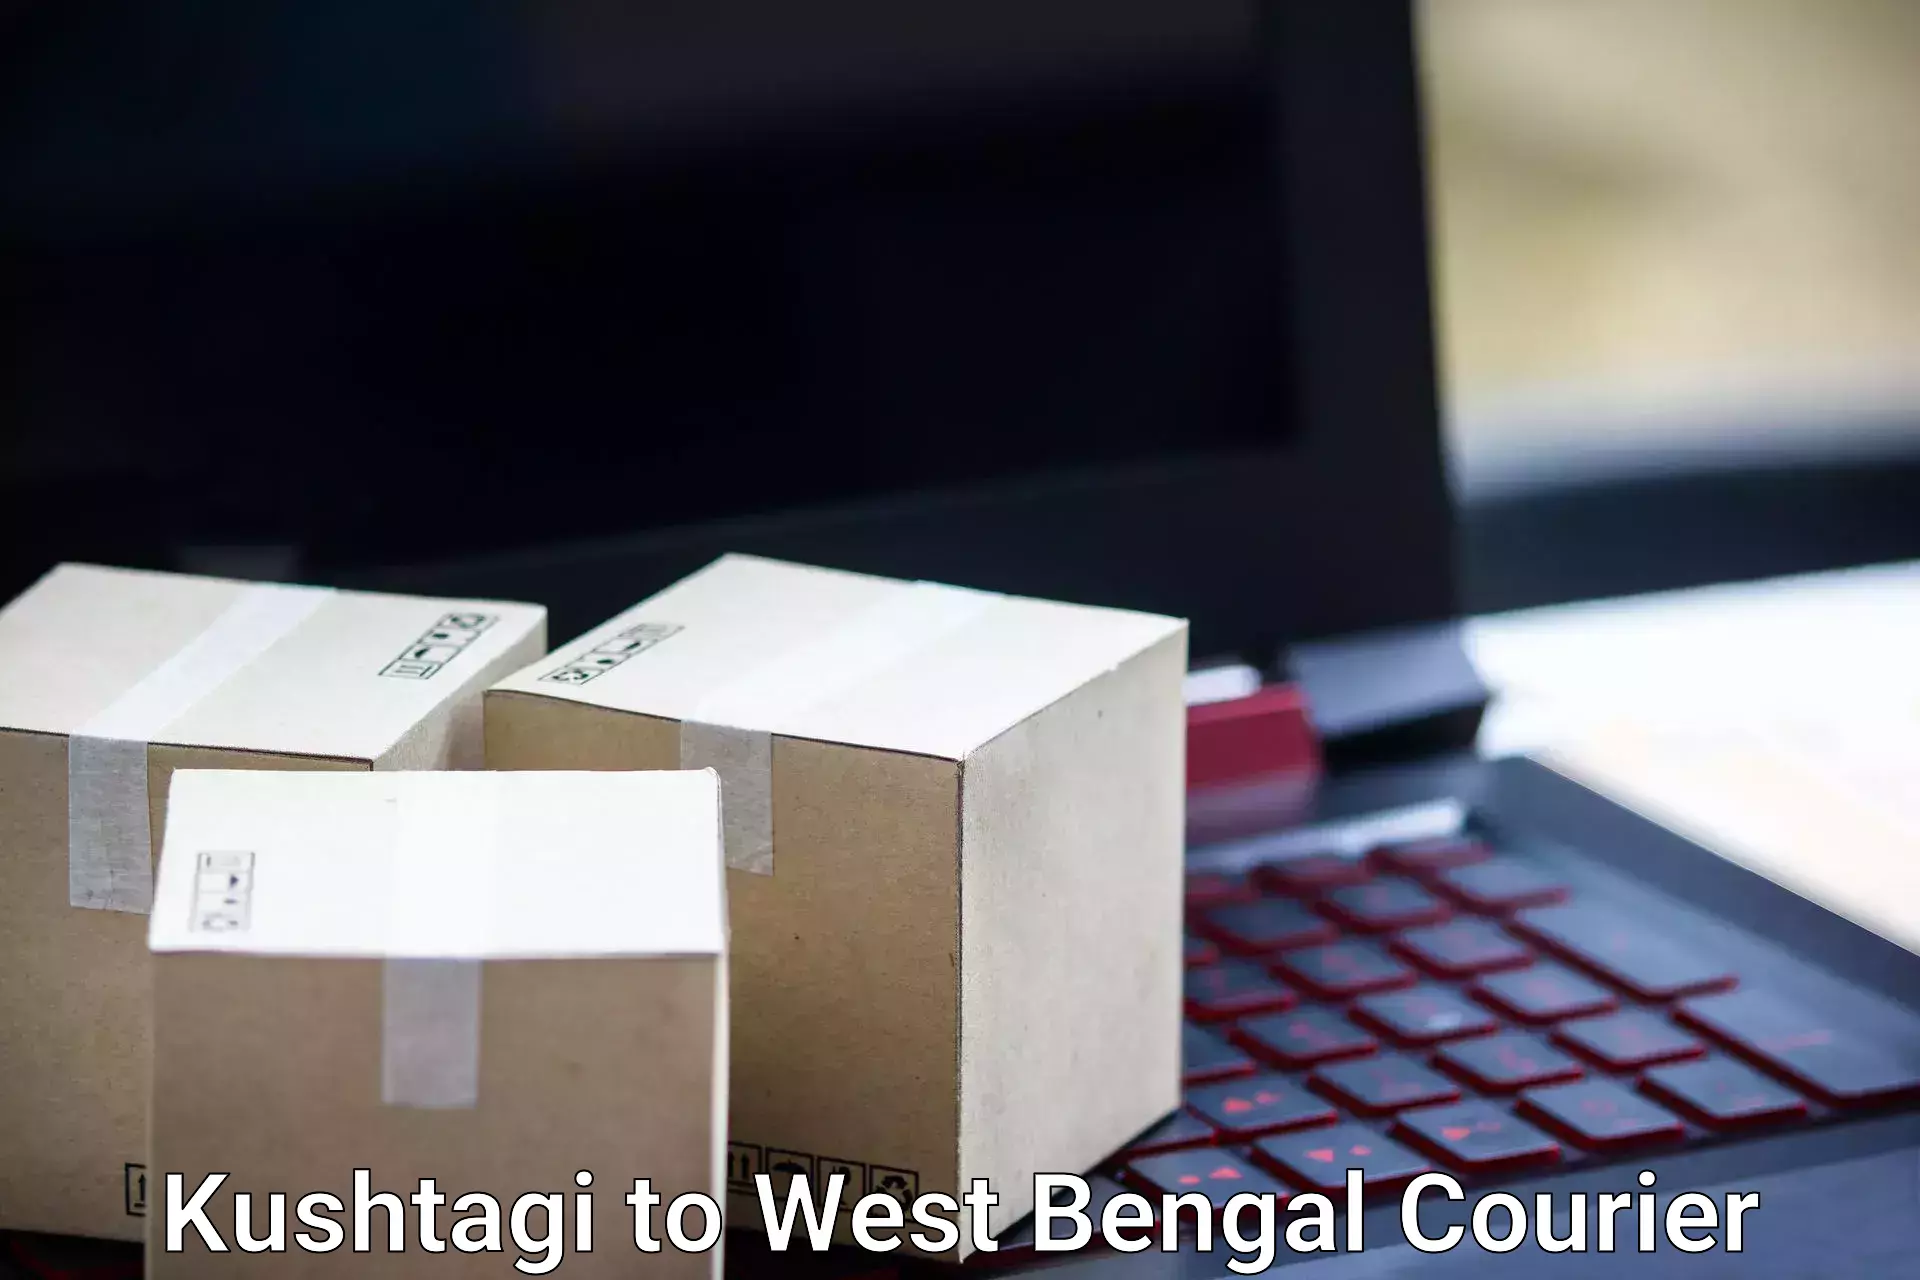 Baggage shipping advice Kushtagi to South 24 Parganas